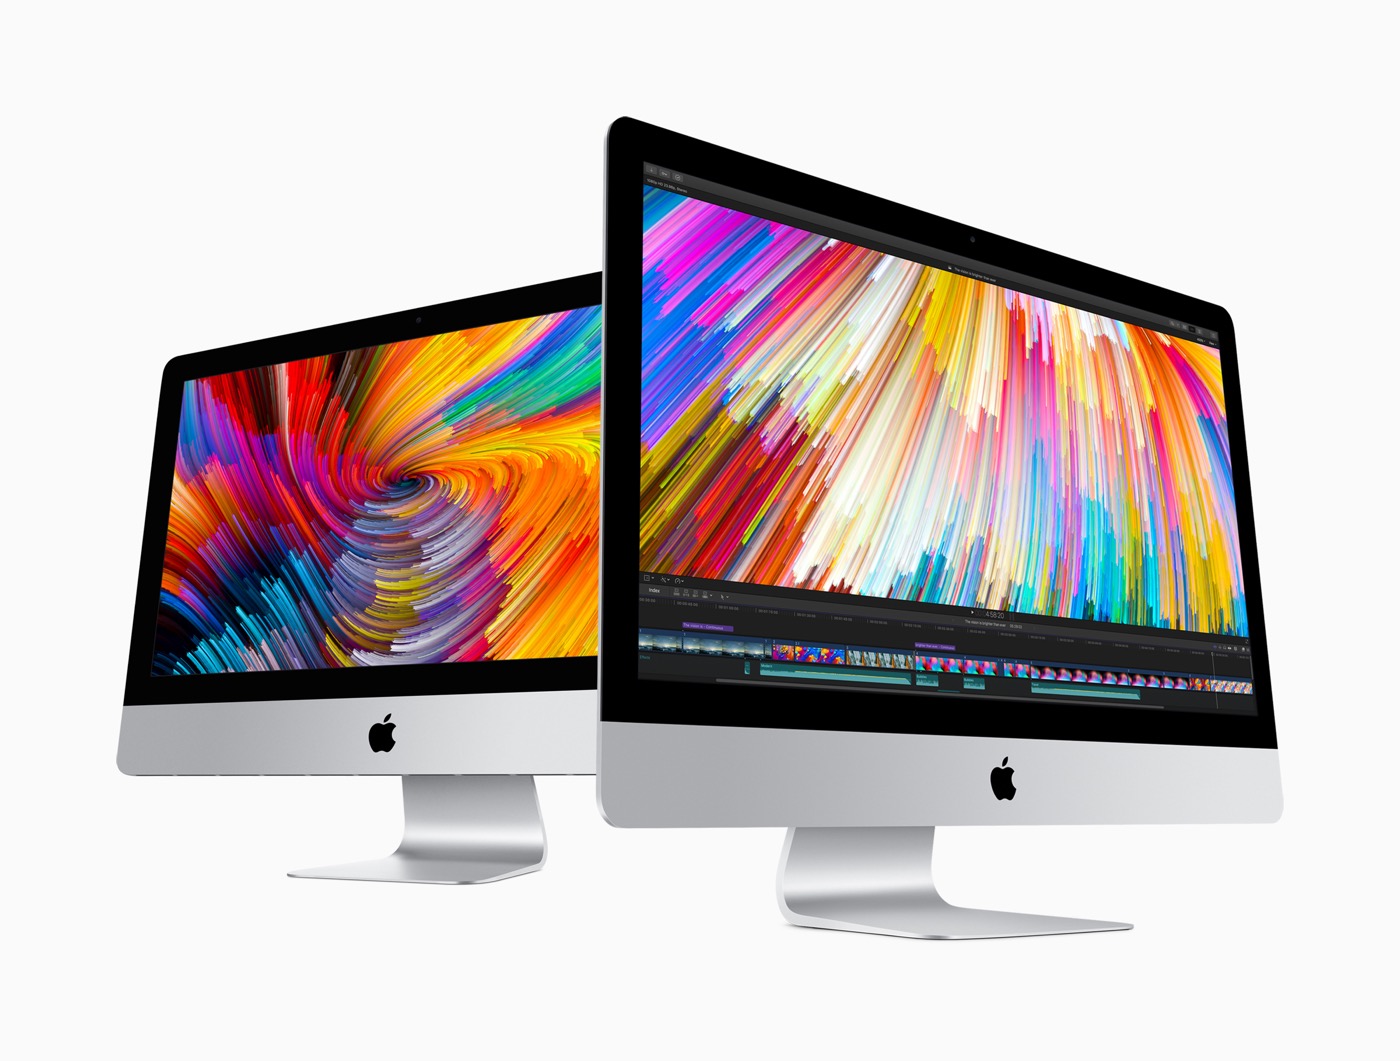 新型｢iMac 21.5インチ｣の非Retinaディスプレイモデルの開封&分解映像